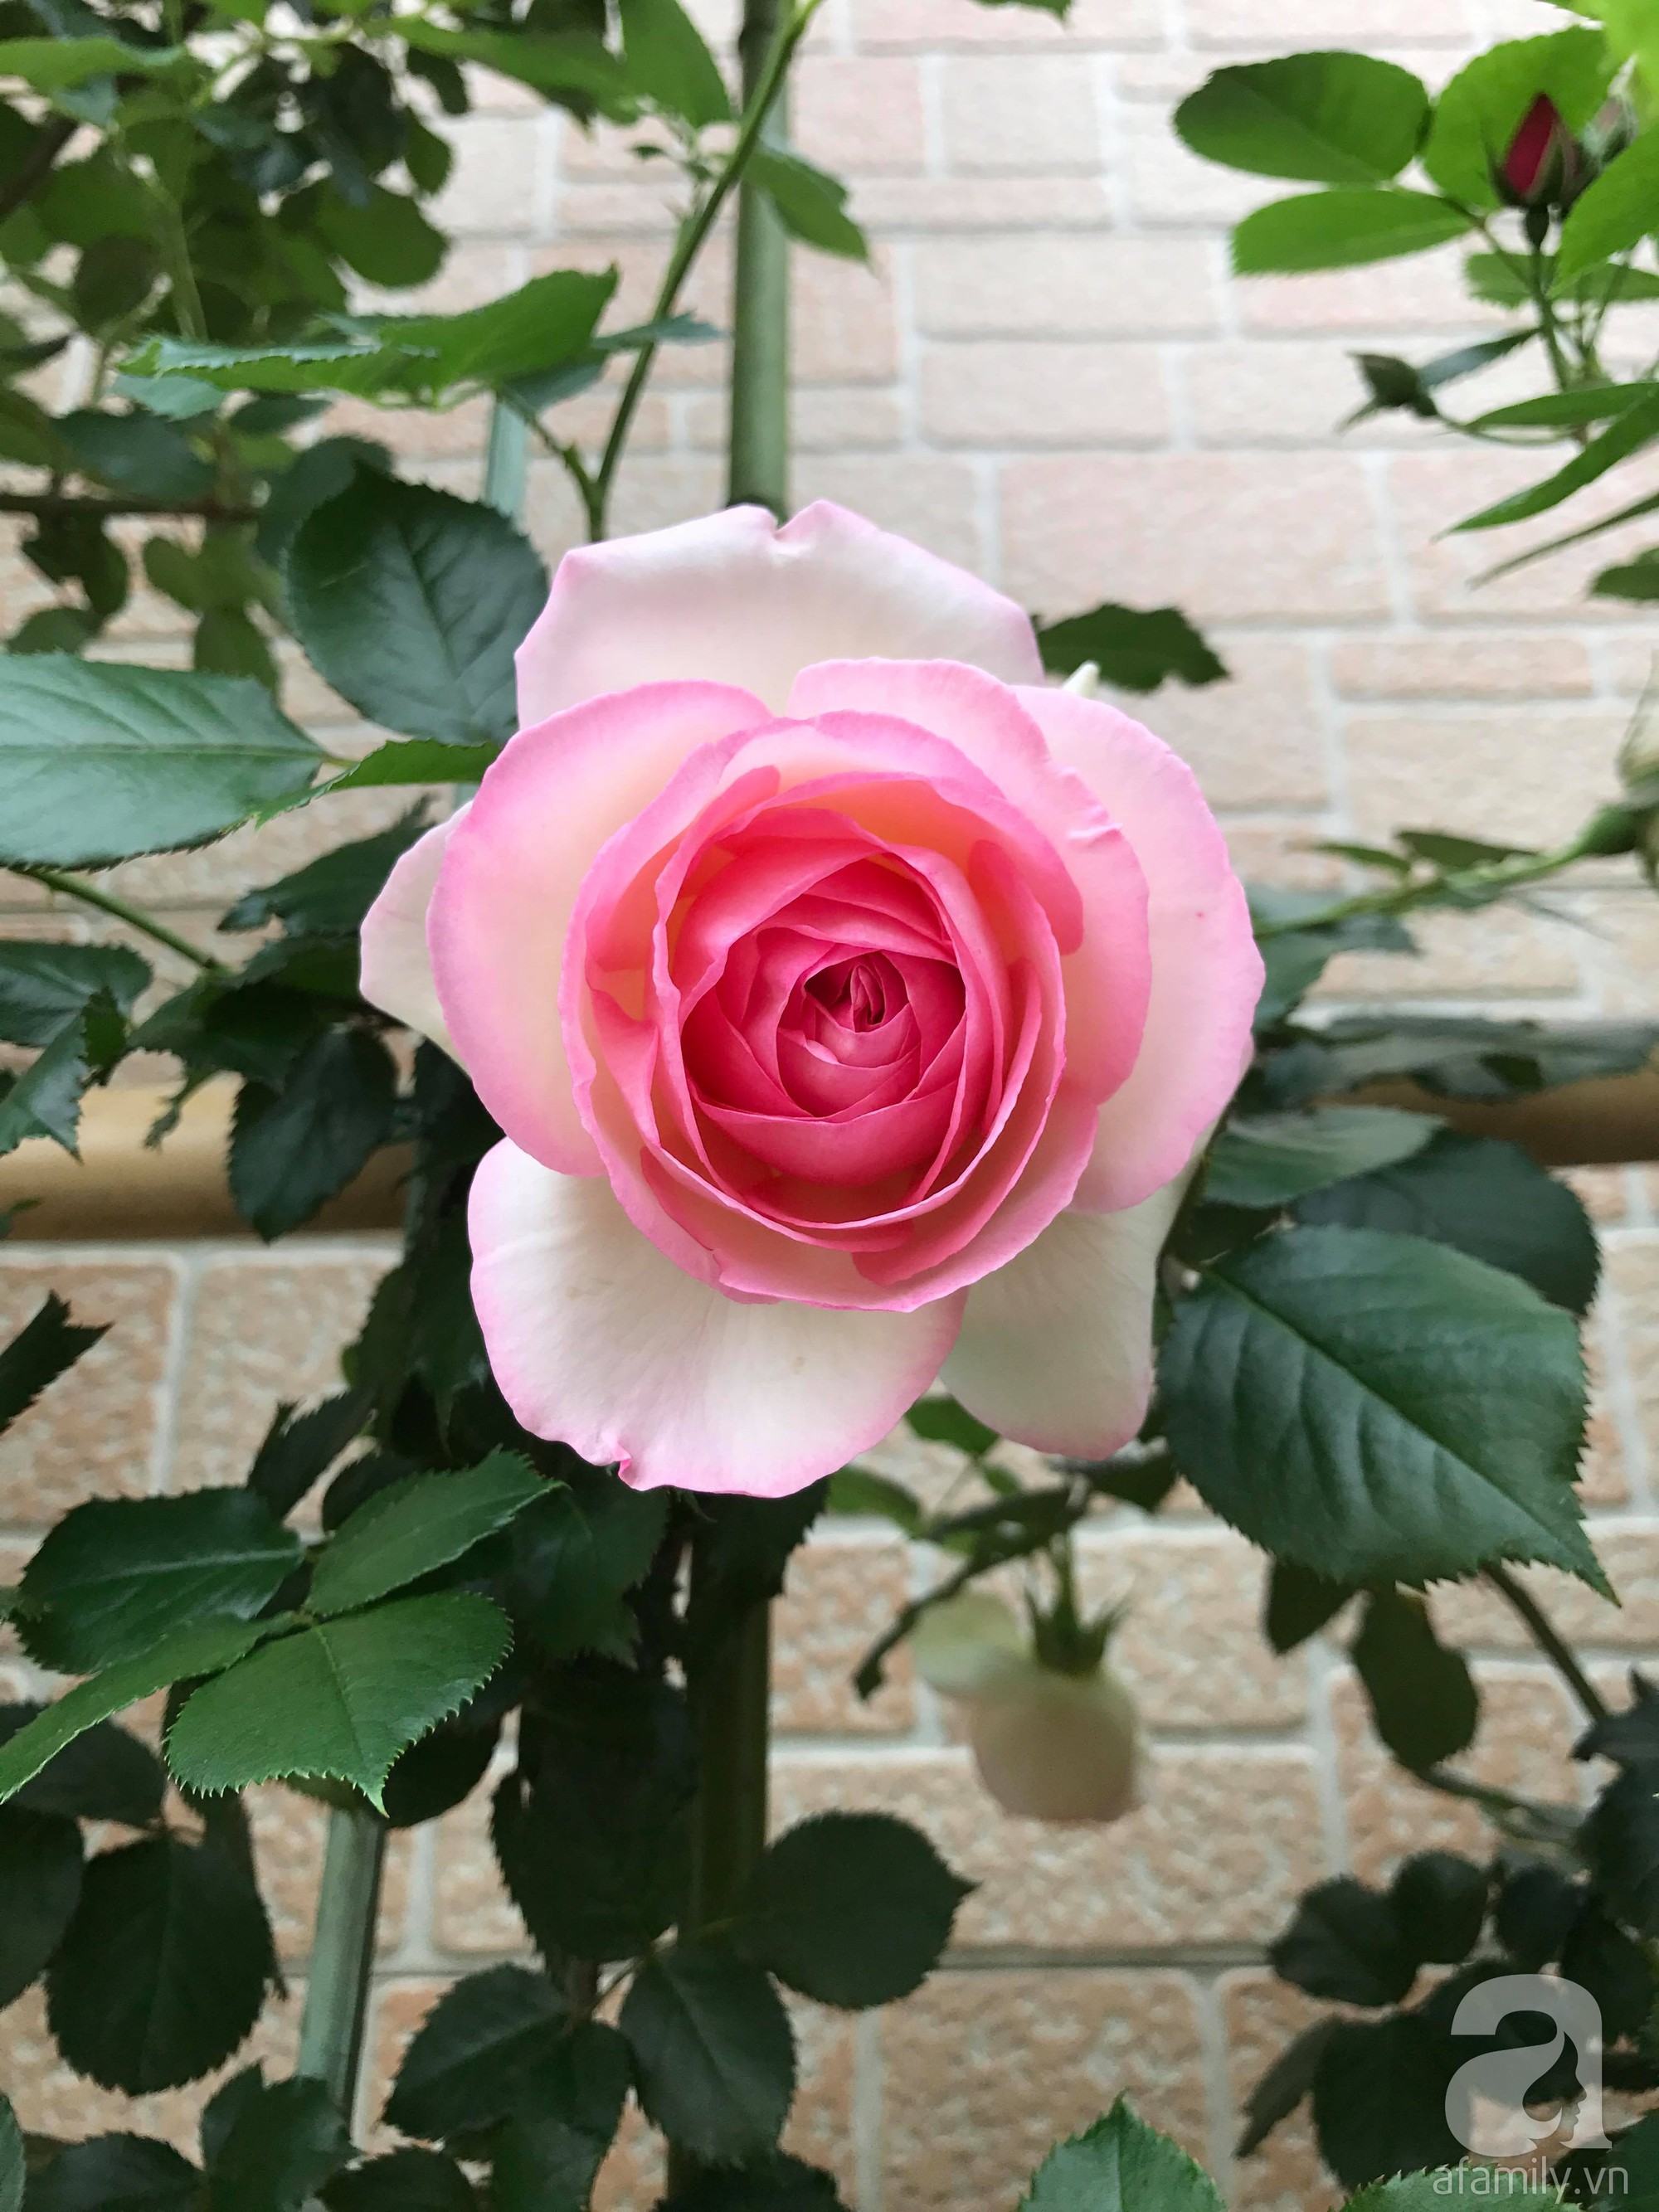 Bức tường hoa hồng đẹp như mơ trong sân vườn vỏn vẹn 6m² của người phụ nữ bỏ ra 5 năm miệt mài chăm sóc - Ảnh 17.